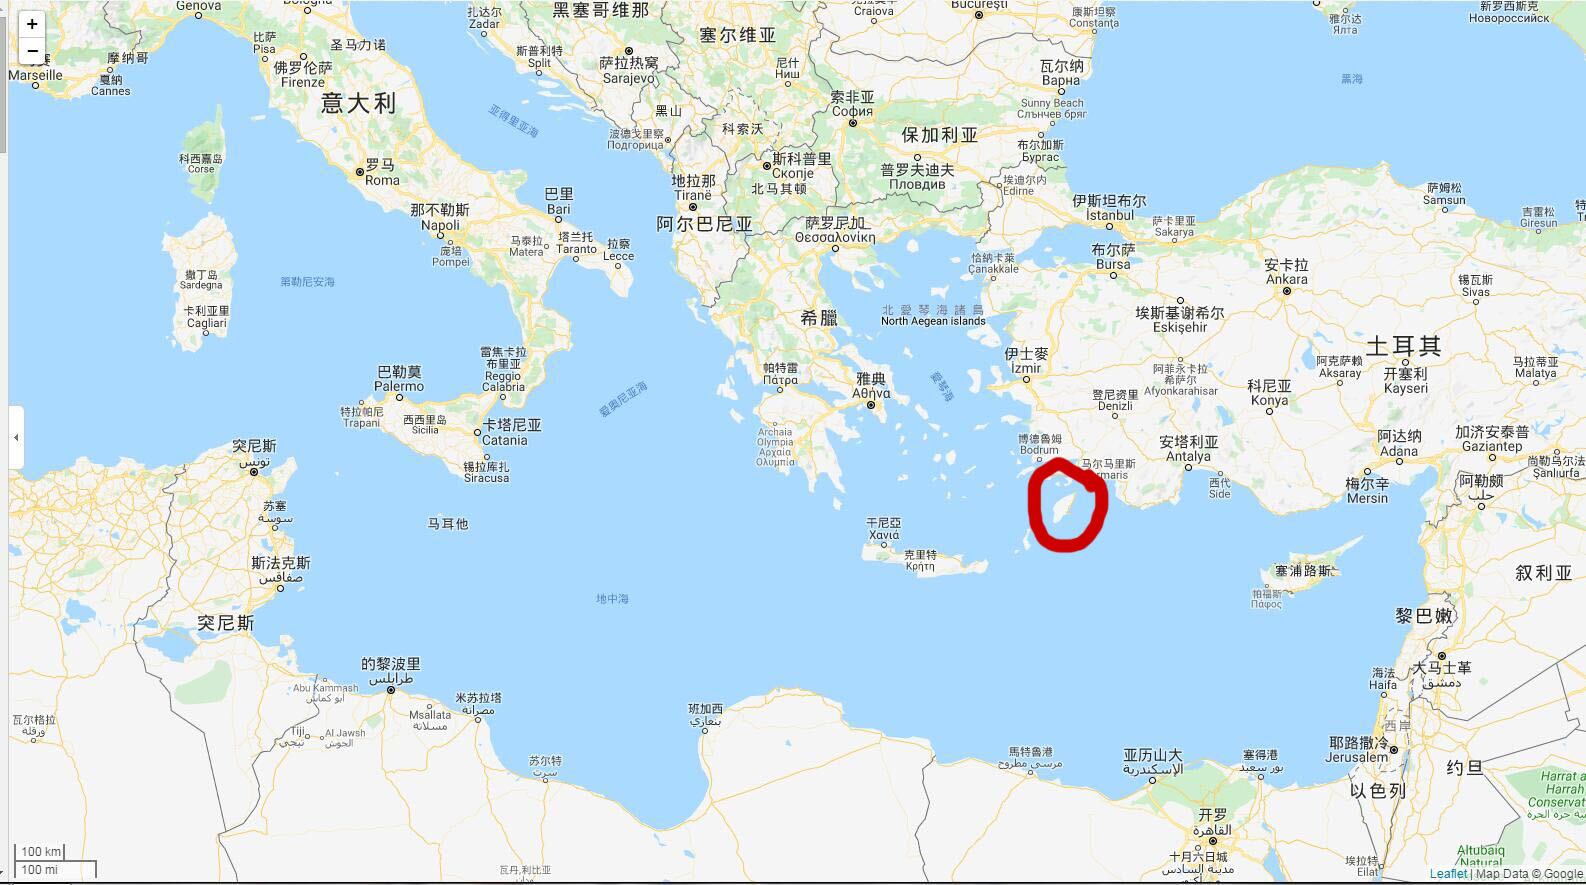 爱琴海地中海交界 地理位置重要